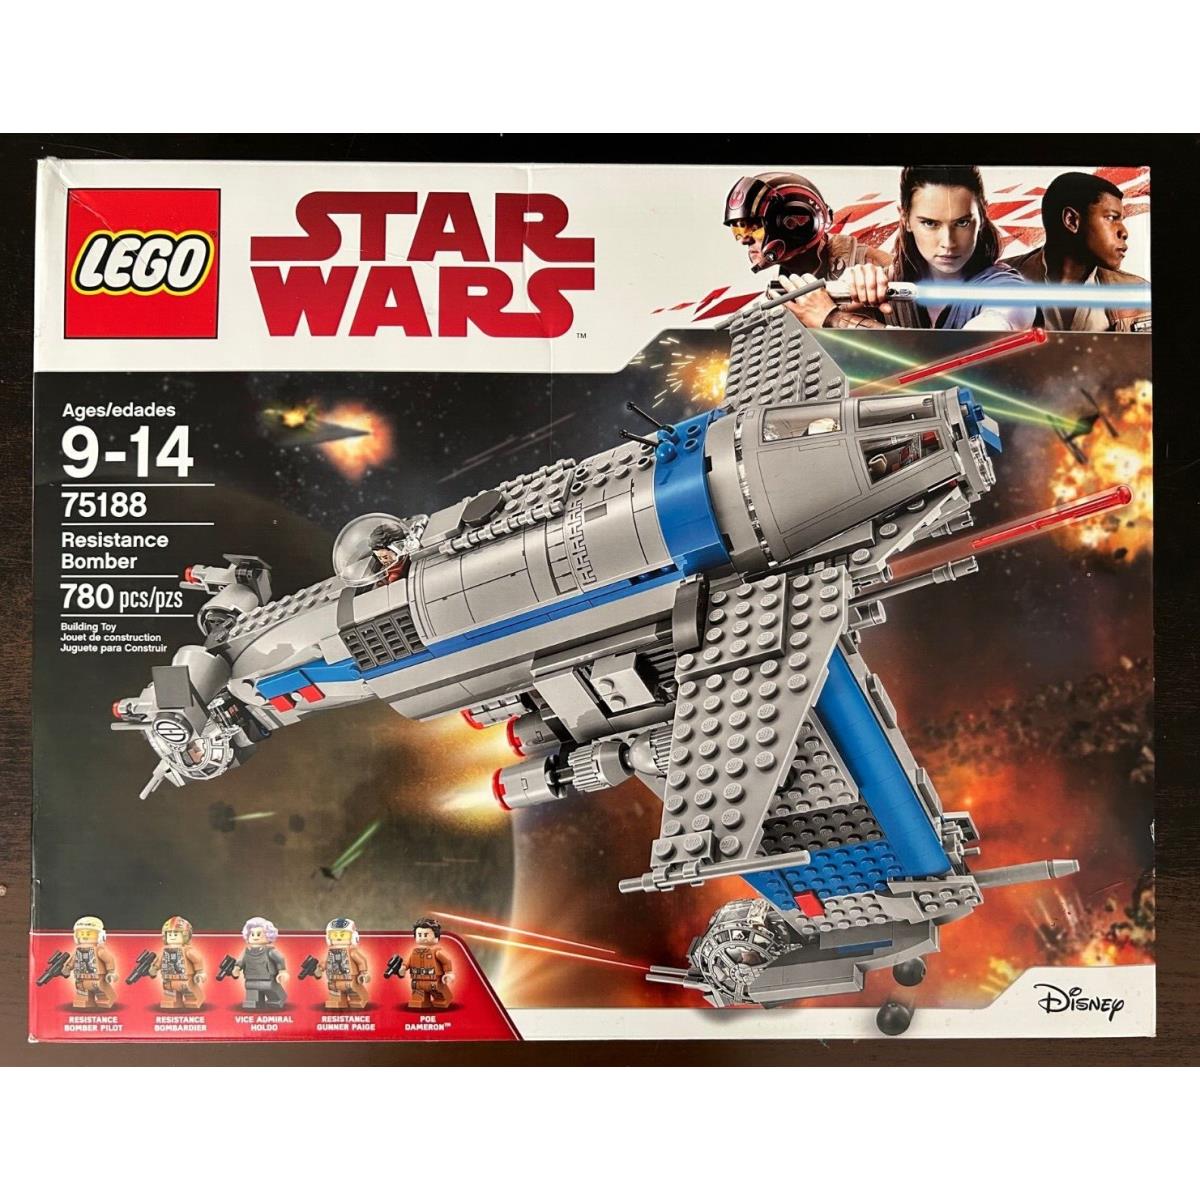 Lego 75188 - Star Wars - Resistance Bomber - Retired - Nisb